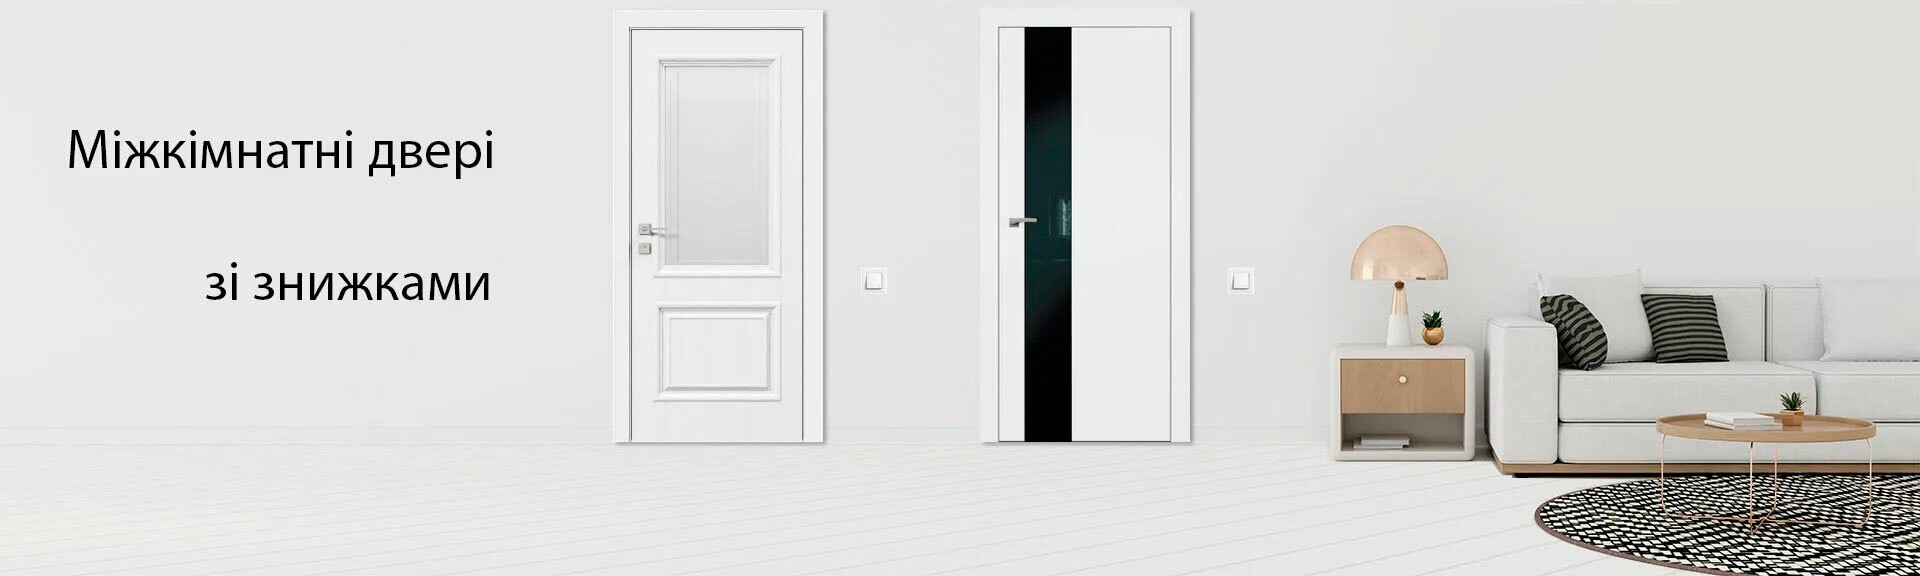 Изображение межкомнатных дверей